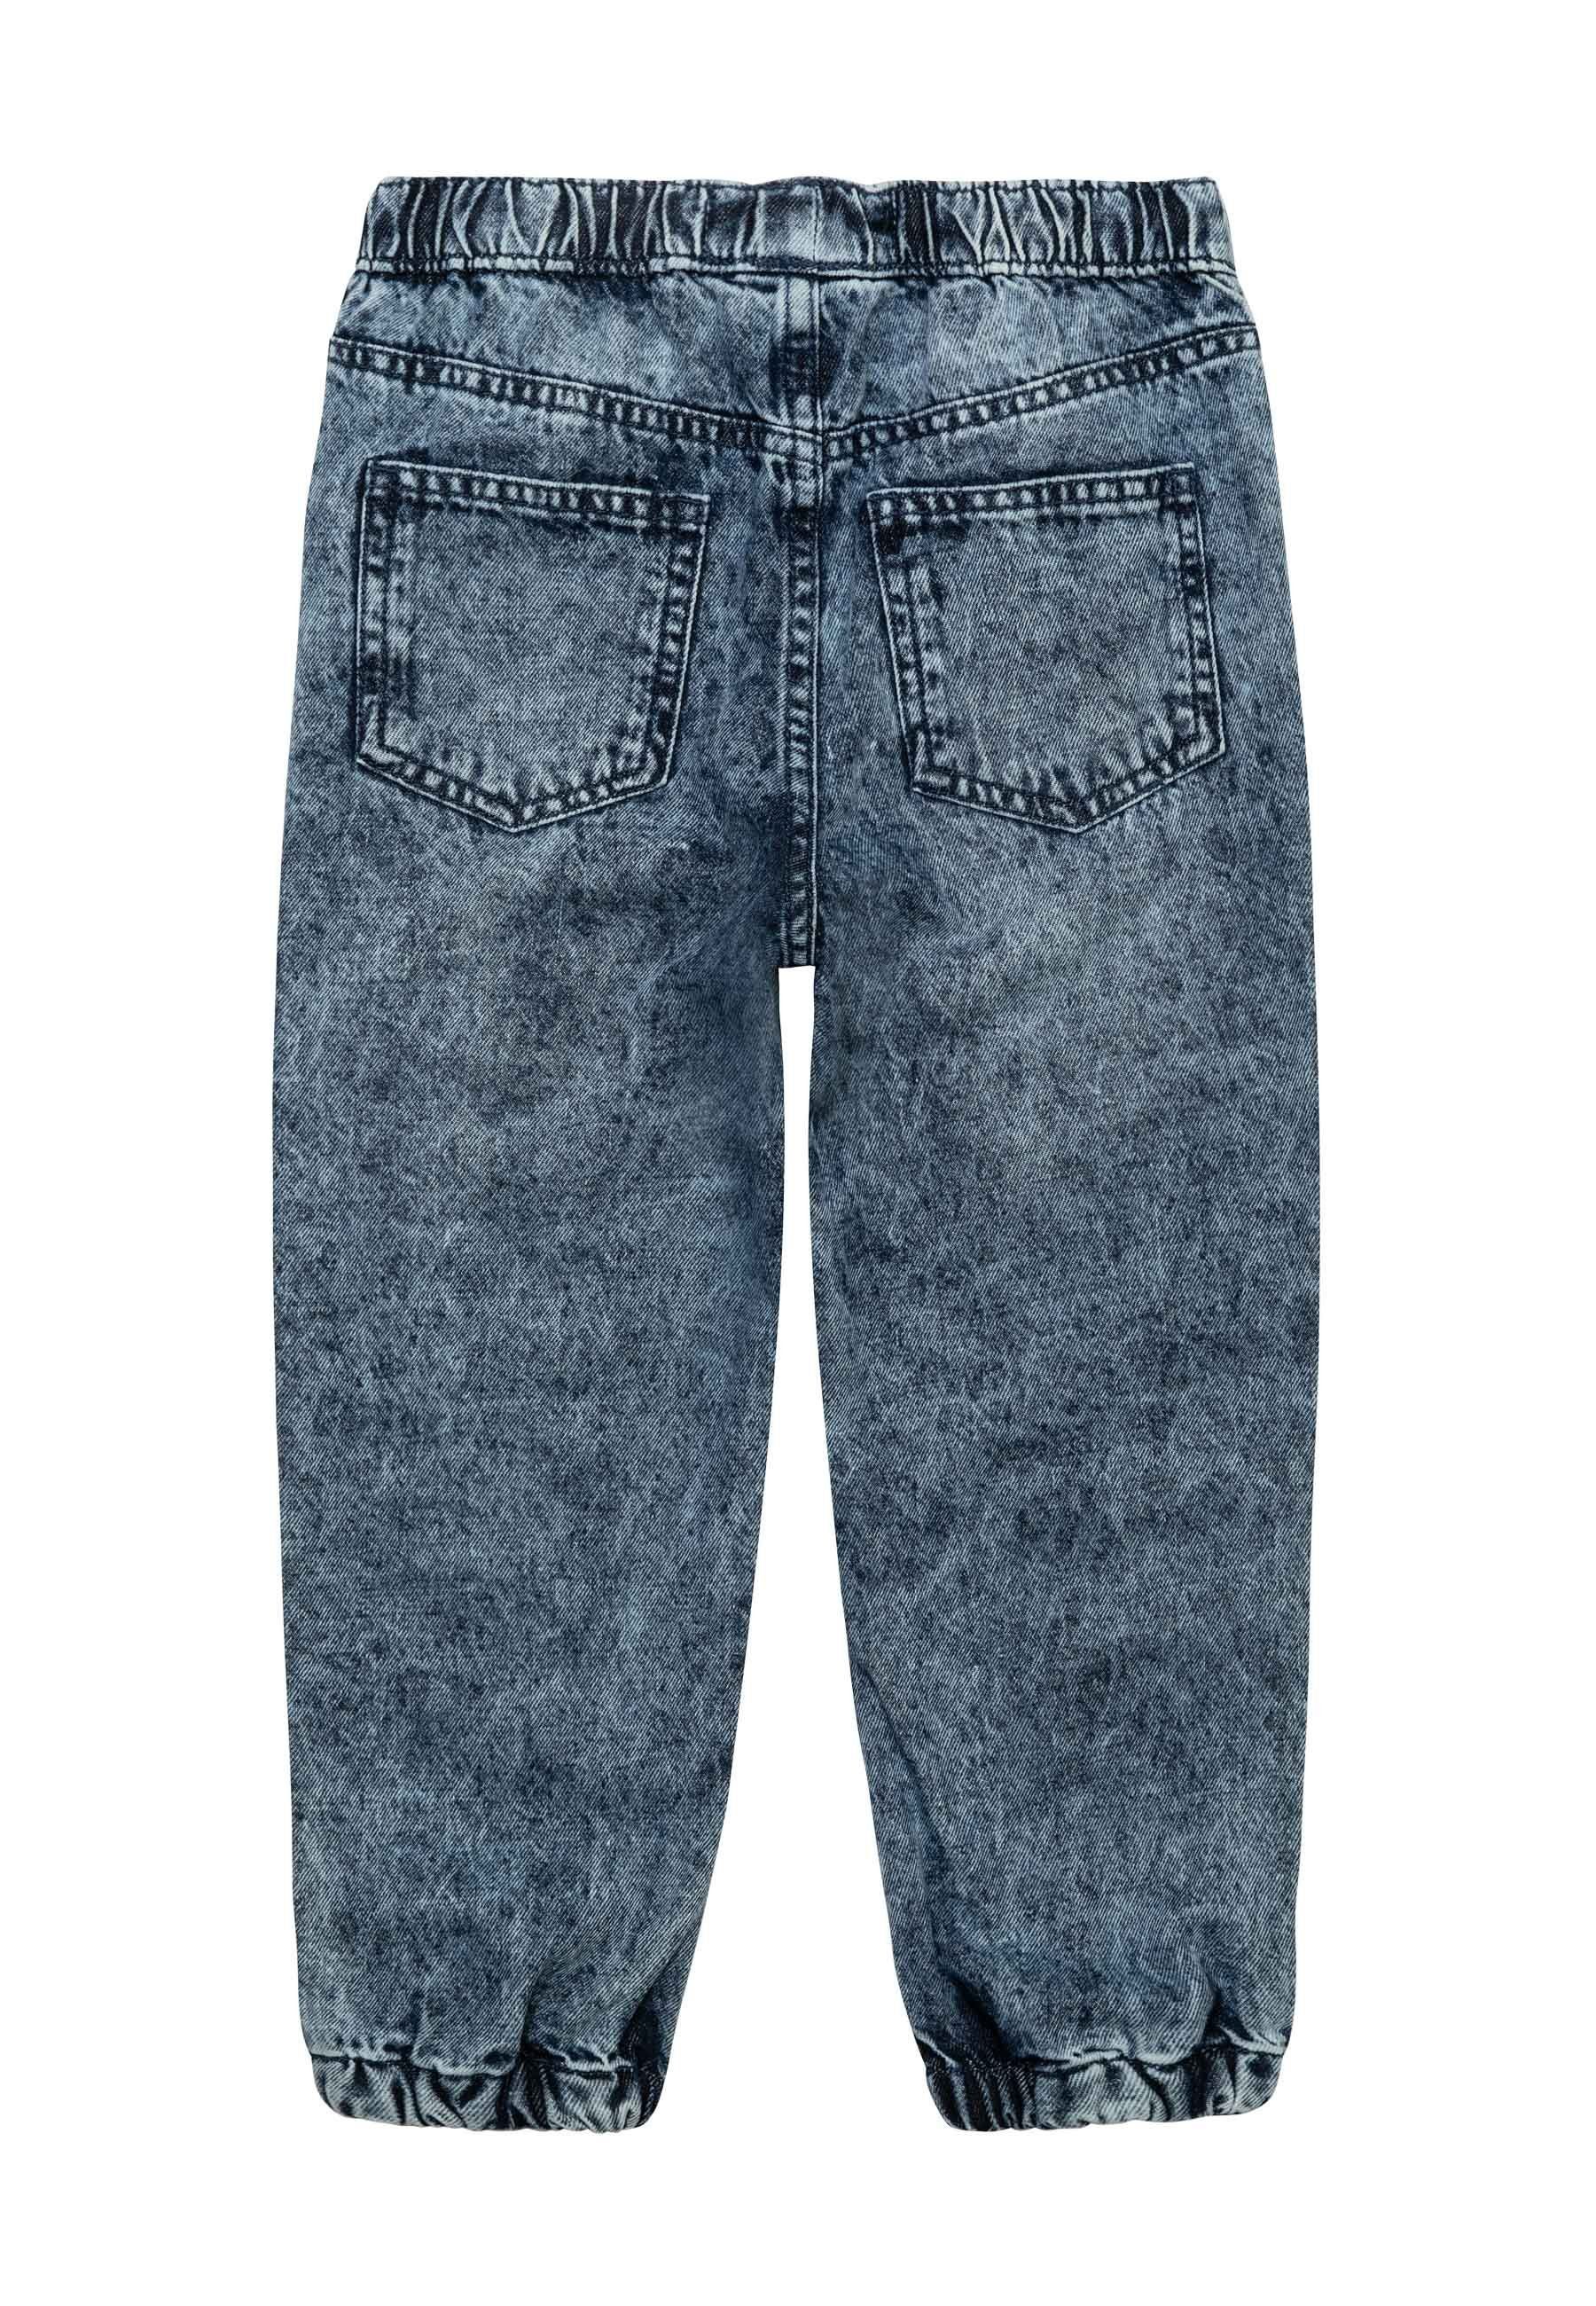 MINOTI Jeansleggings Denim-Jogger-Jeans (1y-8y)